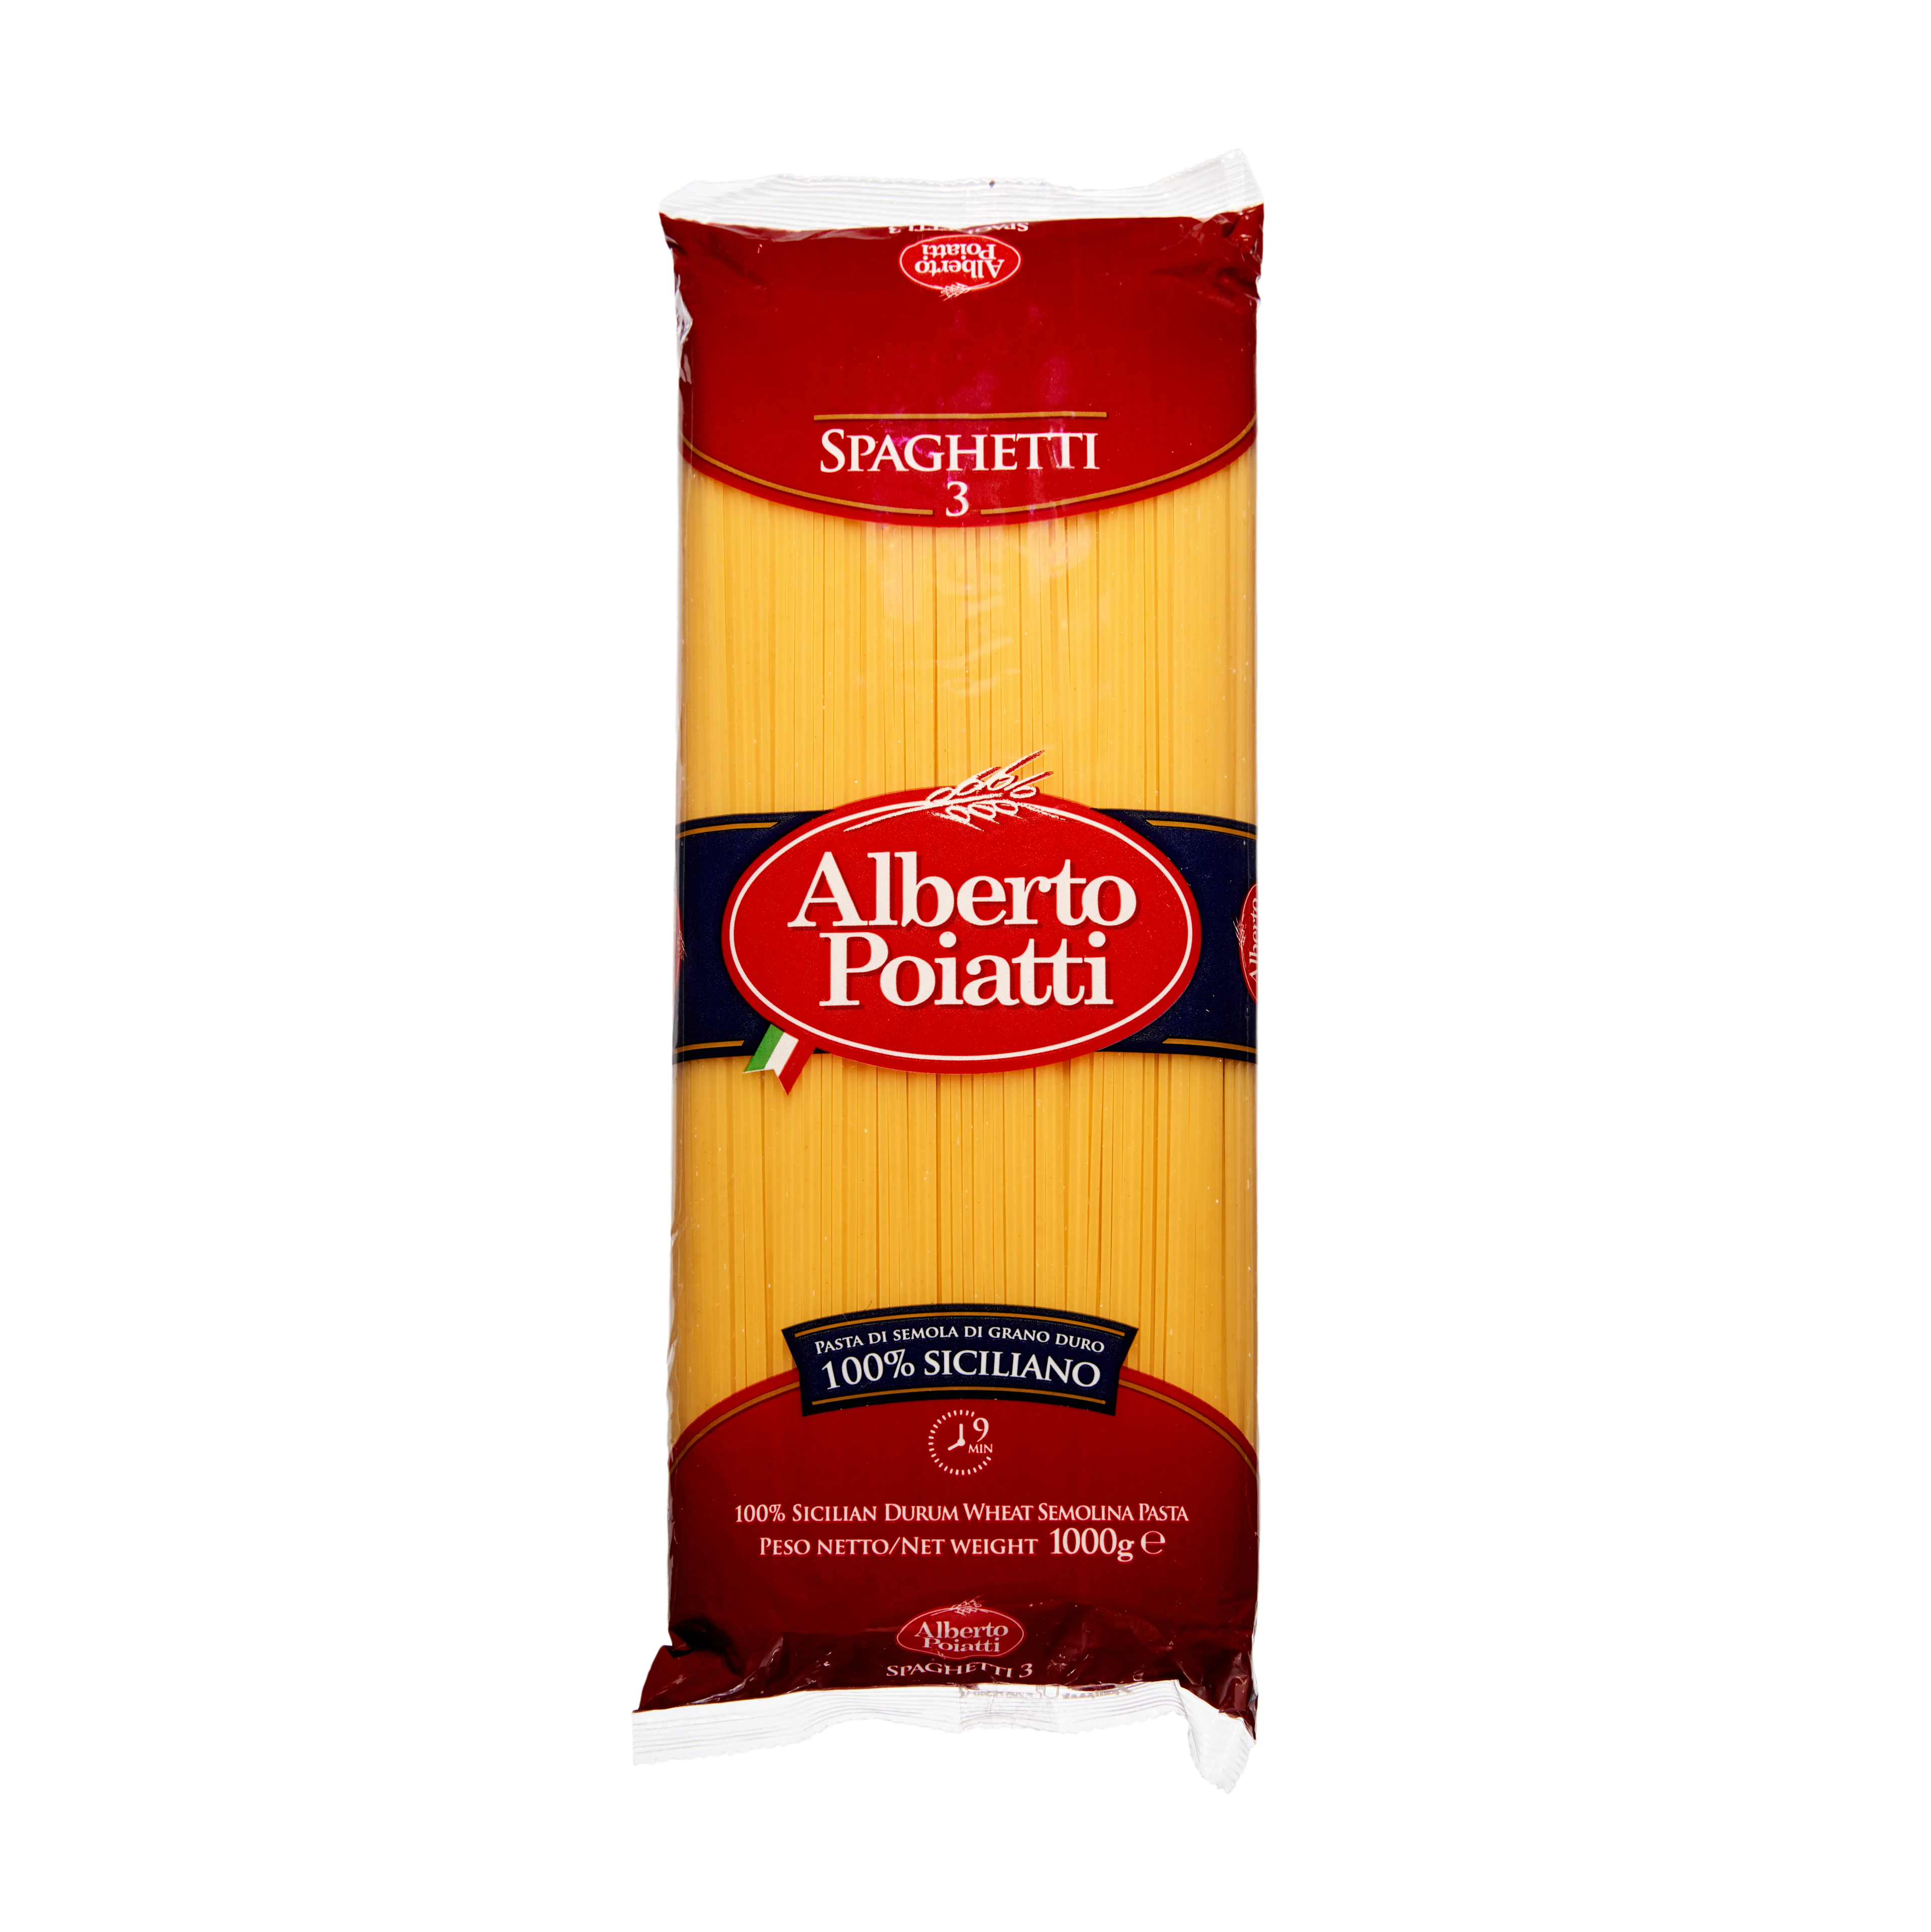 Alberto Pioatti Spaghetti 3 1